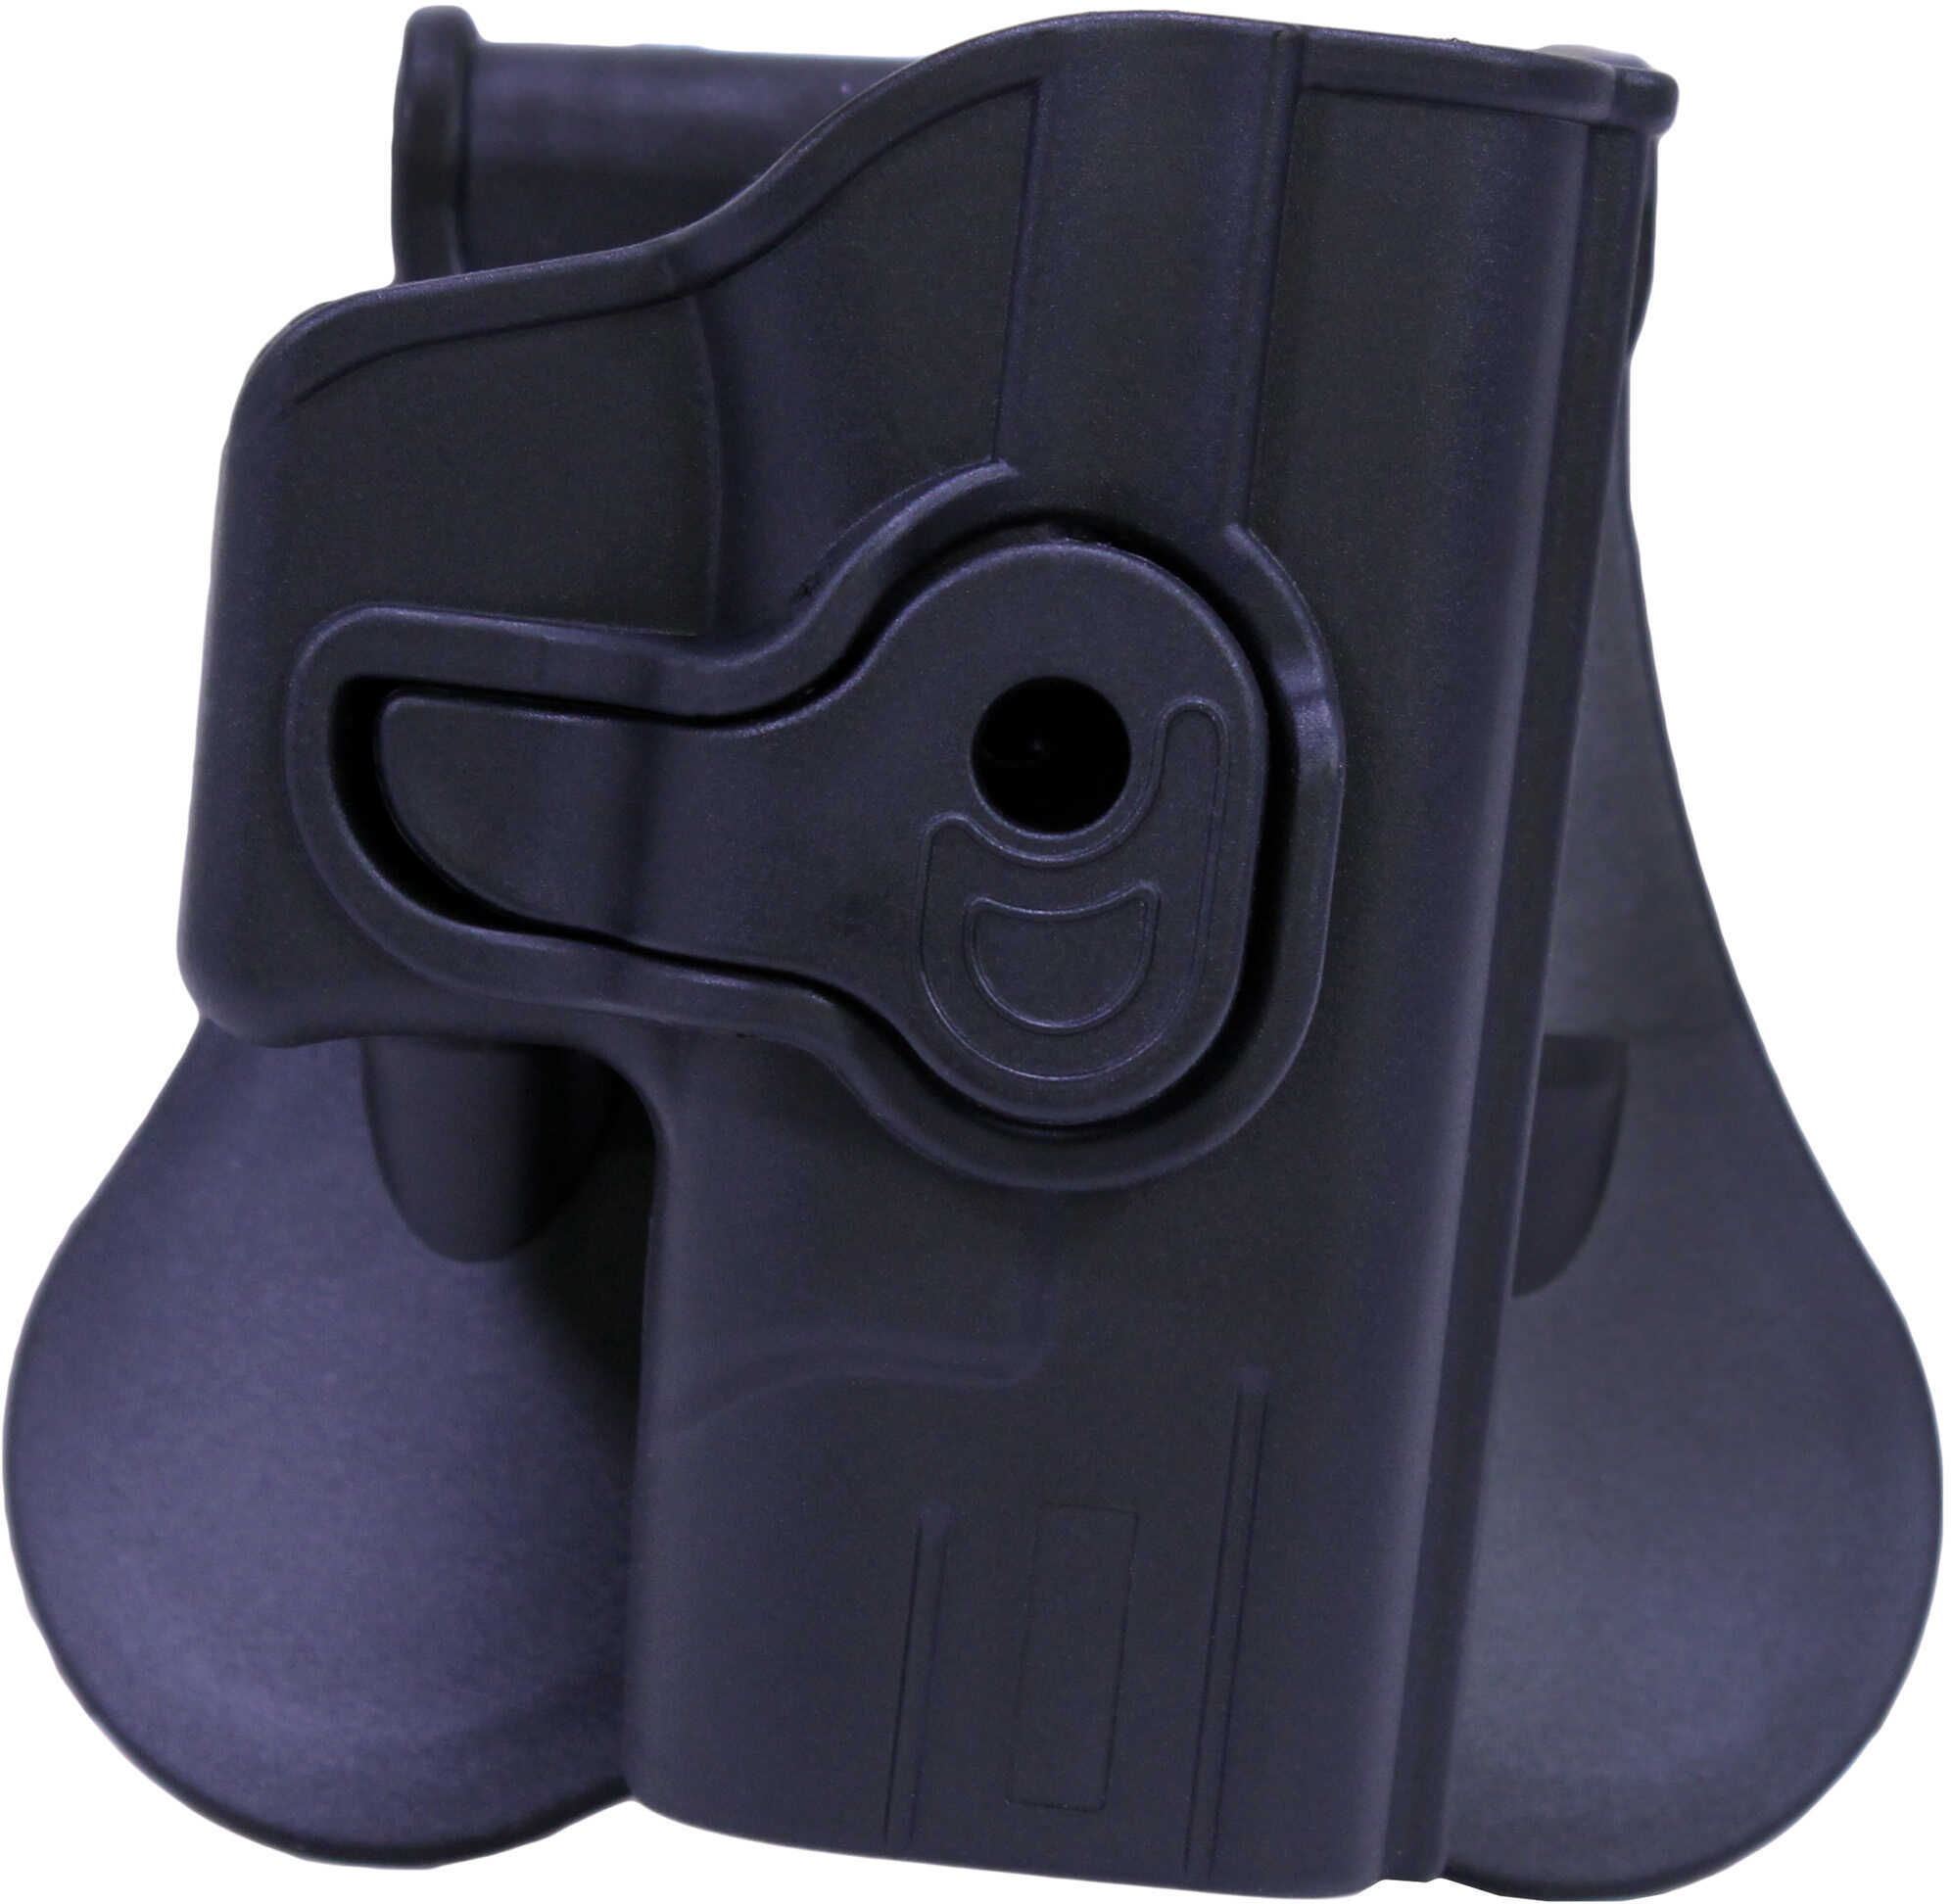 Bulldog Cases Rr Holster Paddle Poly for Glock 43 Gen 1/2/3/4 Black RH